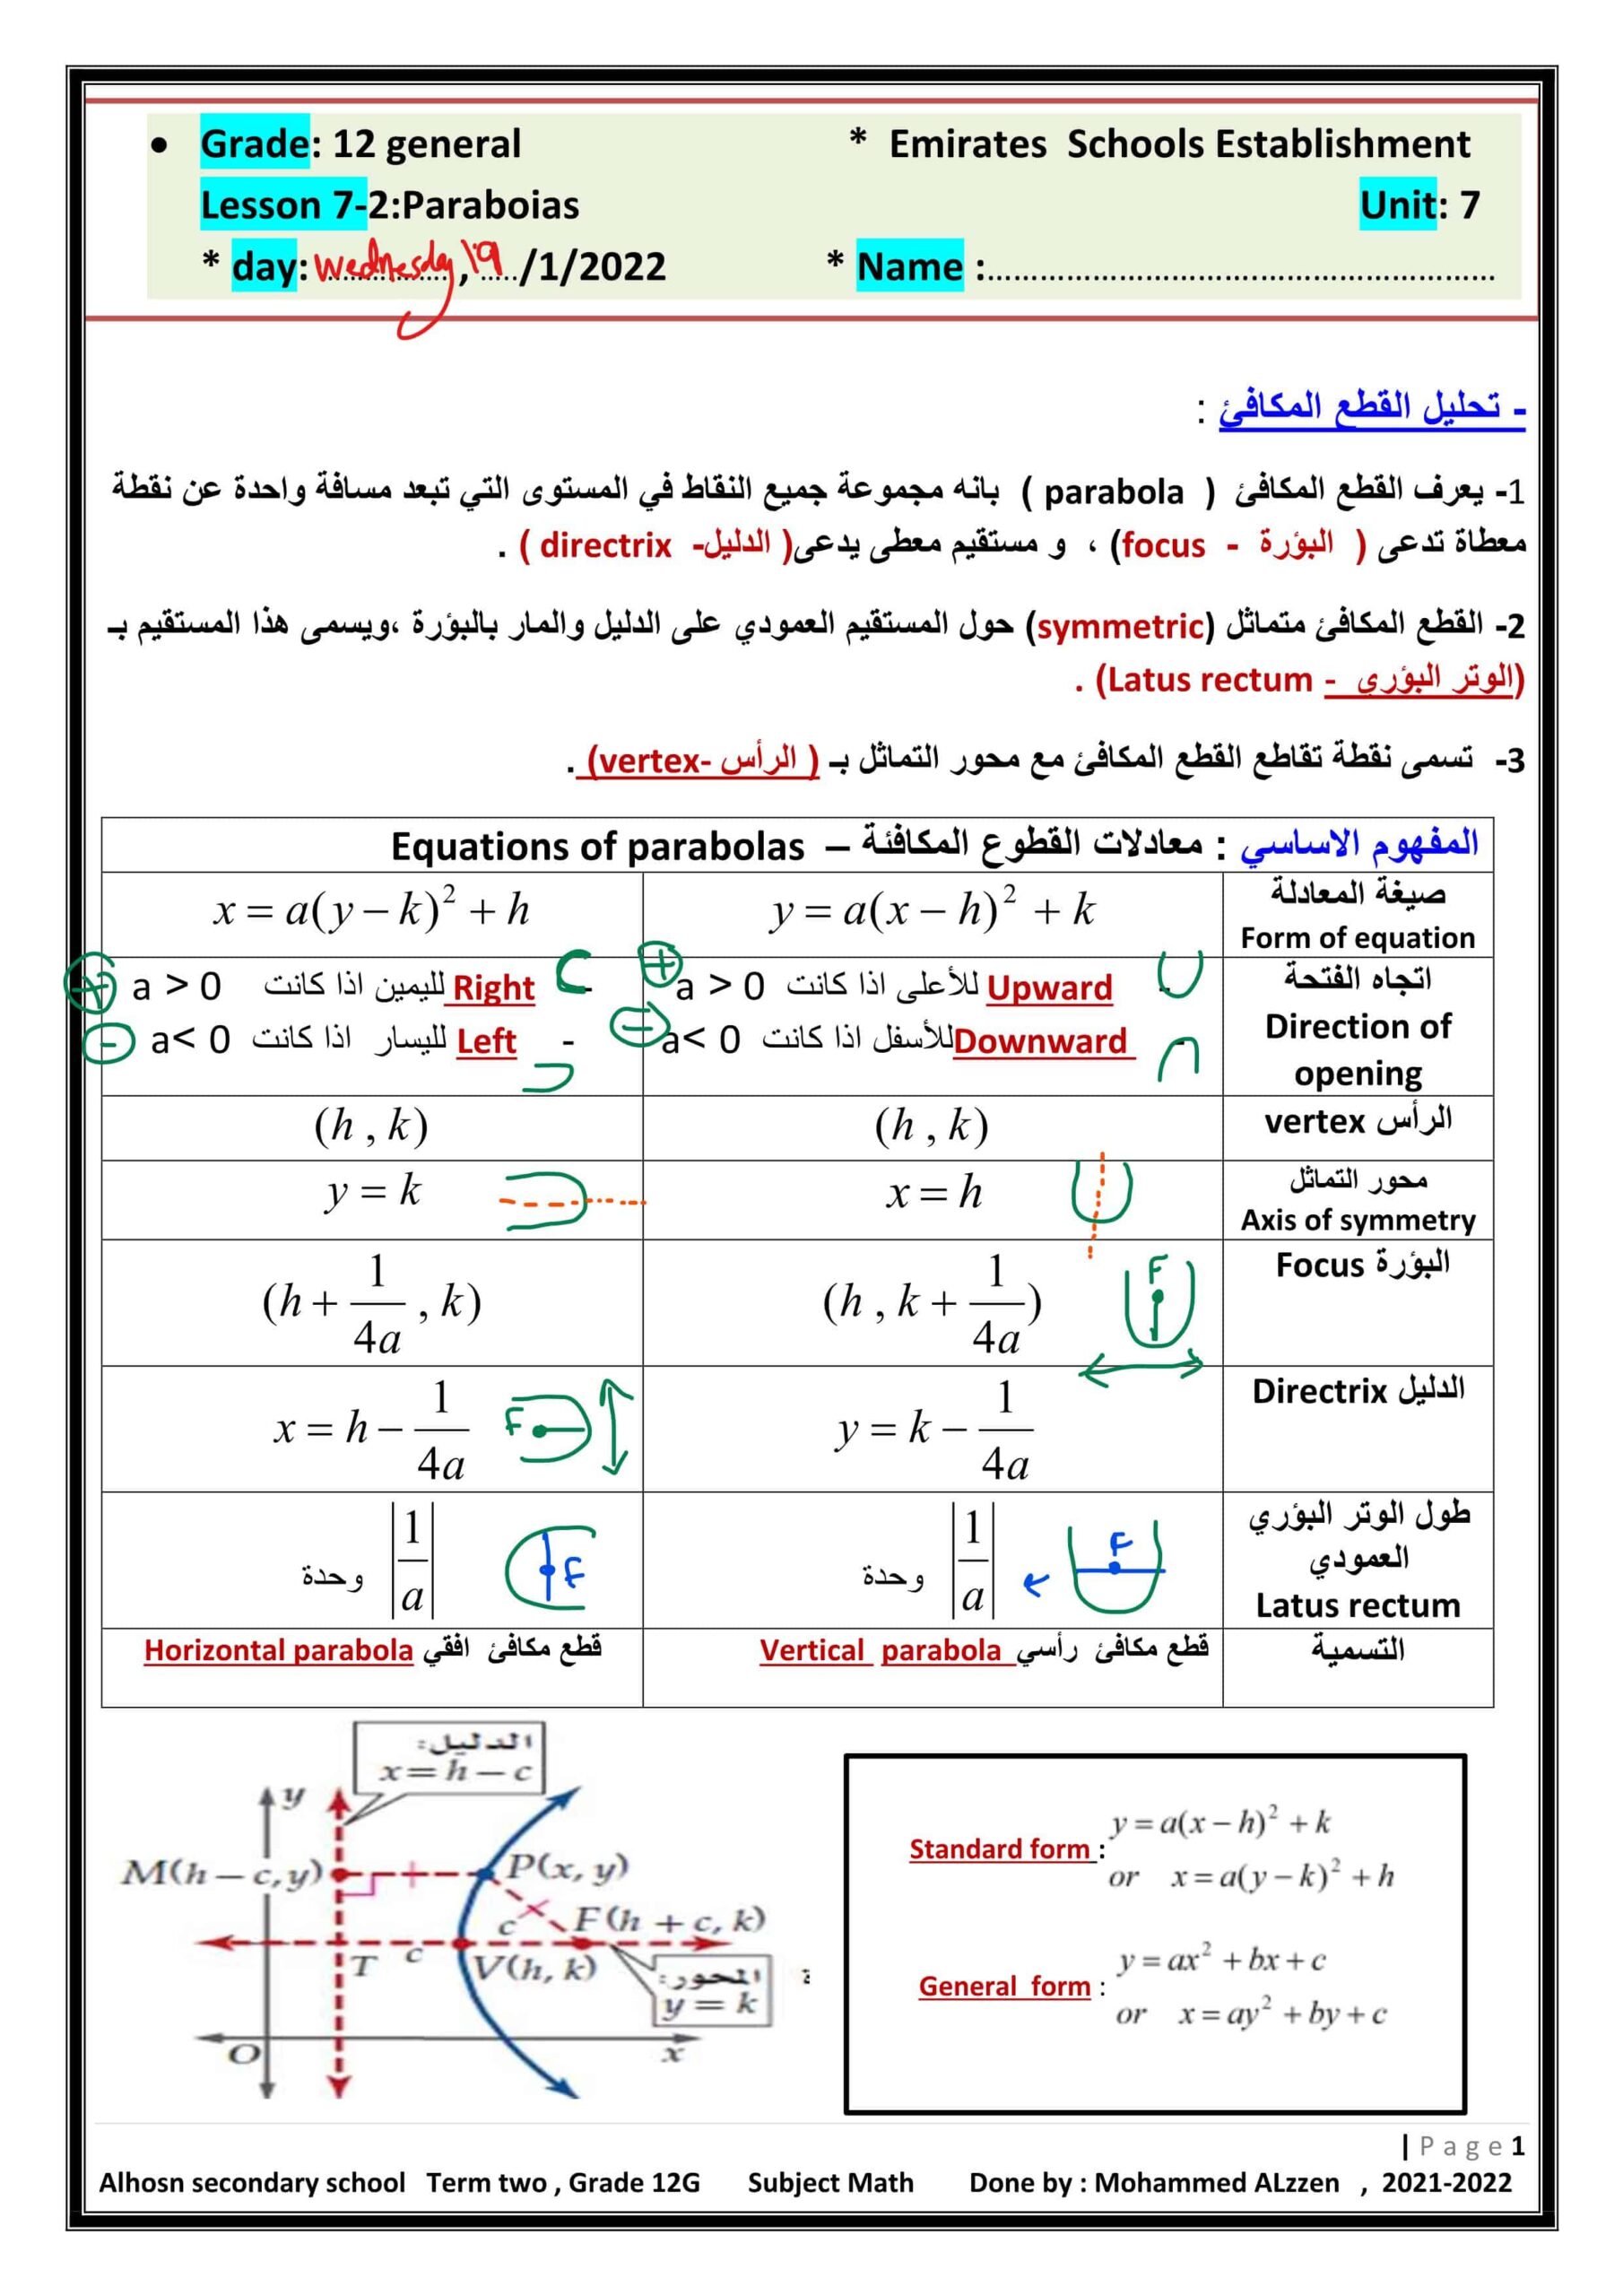 حل أوراق عمل Paraboias الرياضيات المتكاملة الصف الثاني عشر عام